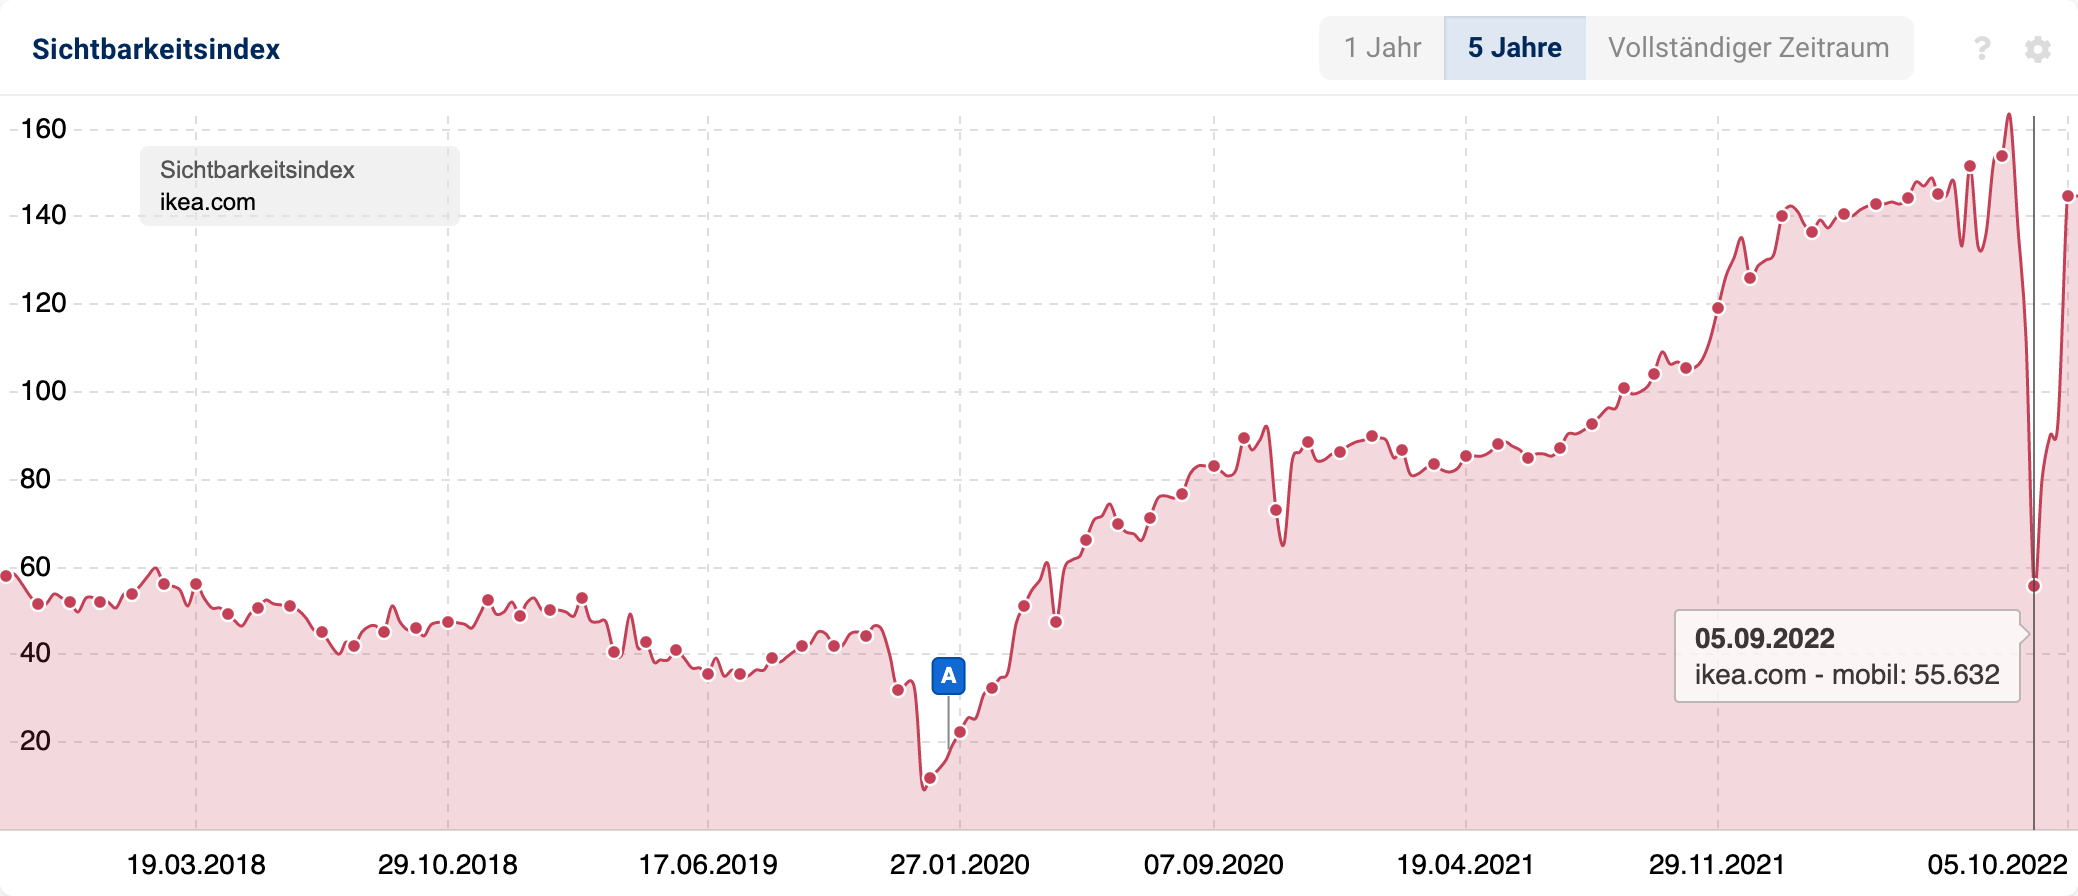 Die Domain Ikea.com hat von Mitte August bis Anfang September knapp über 100 Punkte im Sichtbarkeitsindex verloren.